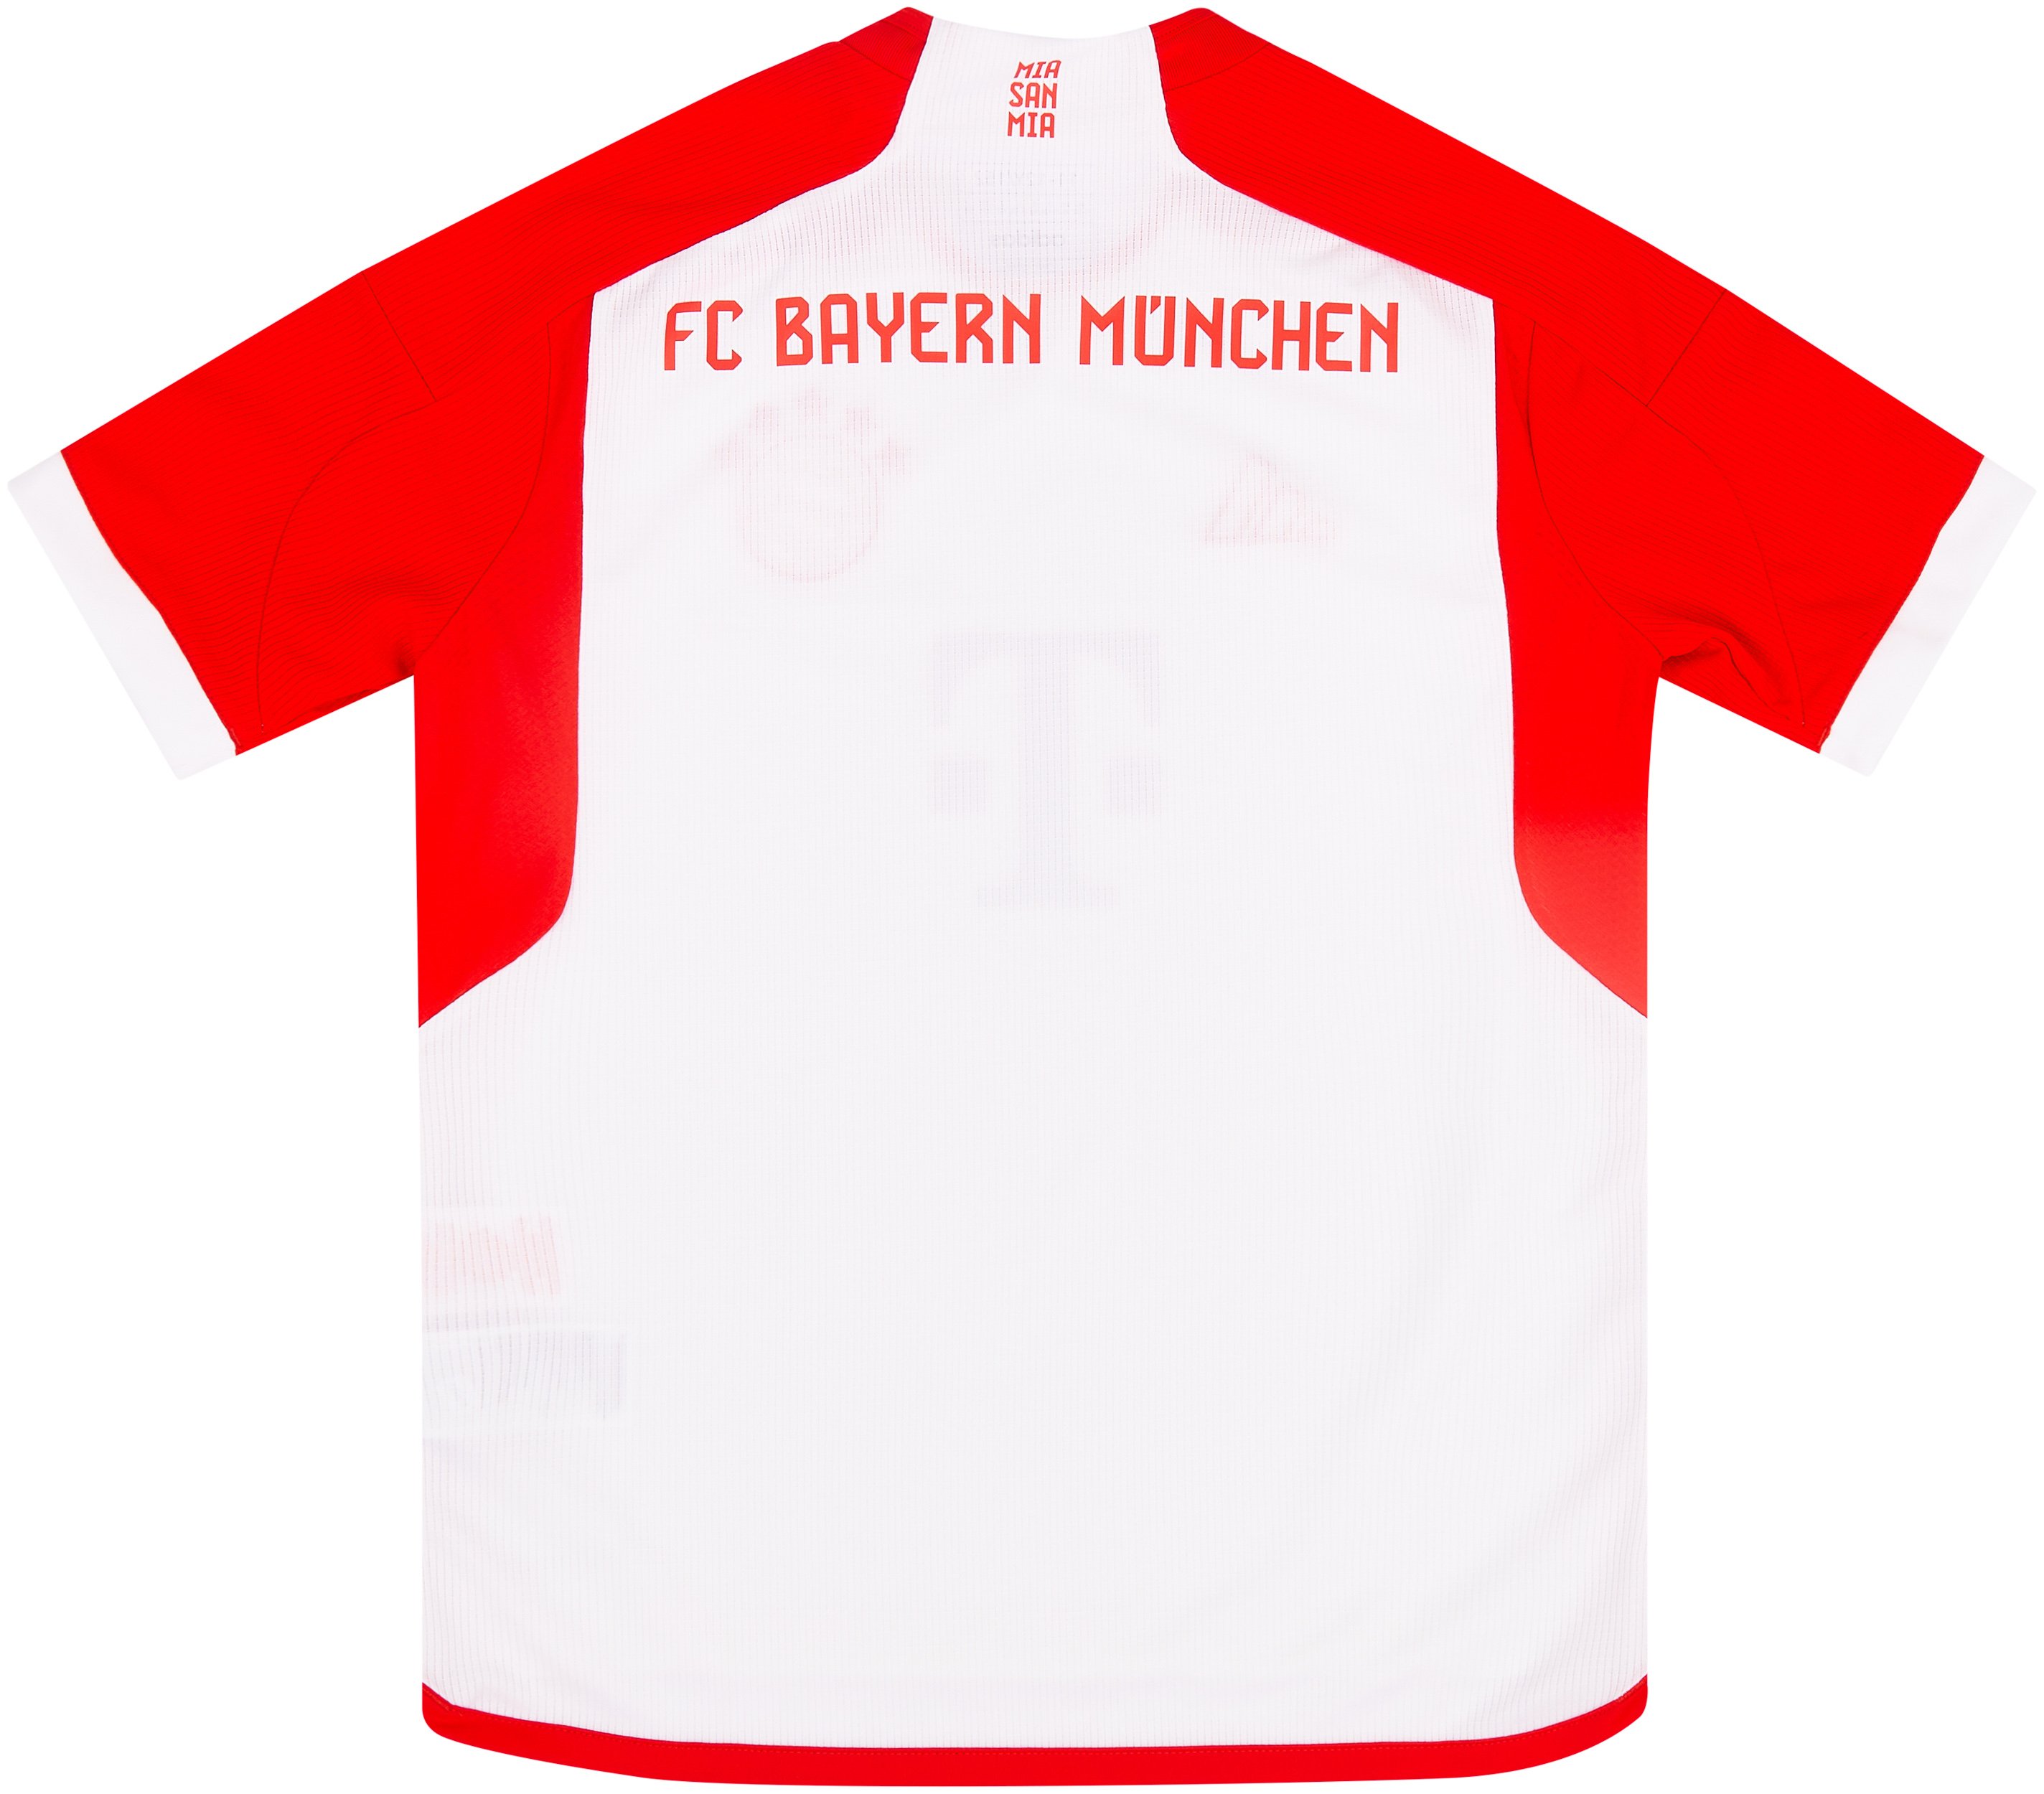 Bayern Munich Sleeveless Training Kit (Top+Shorts) Red 2023/24